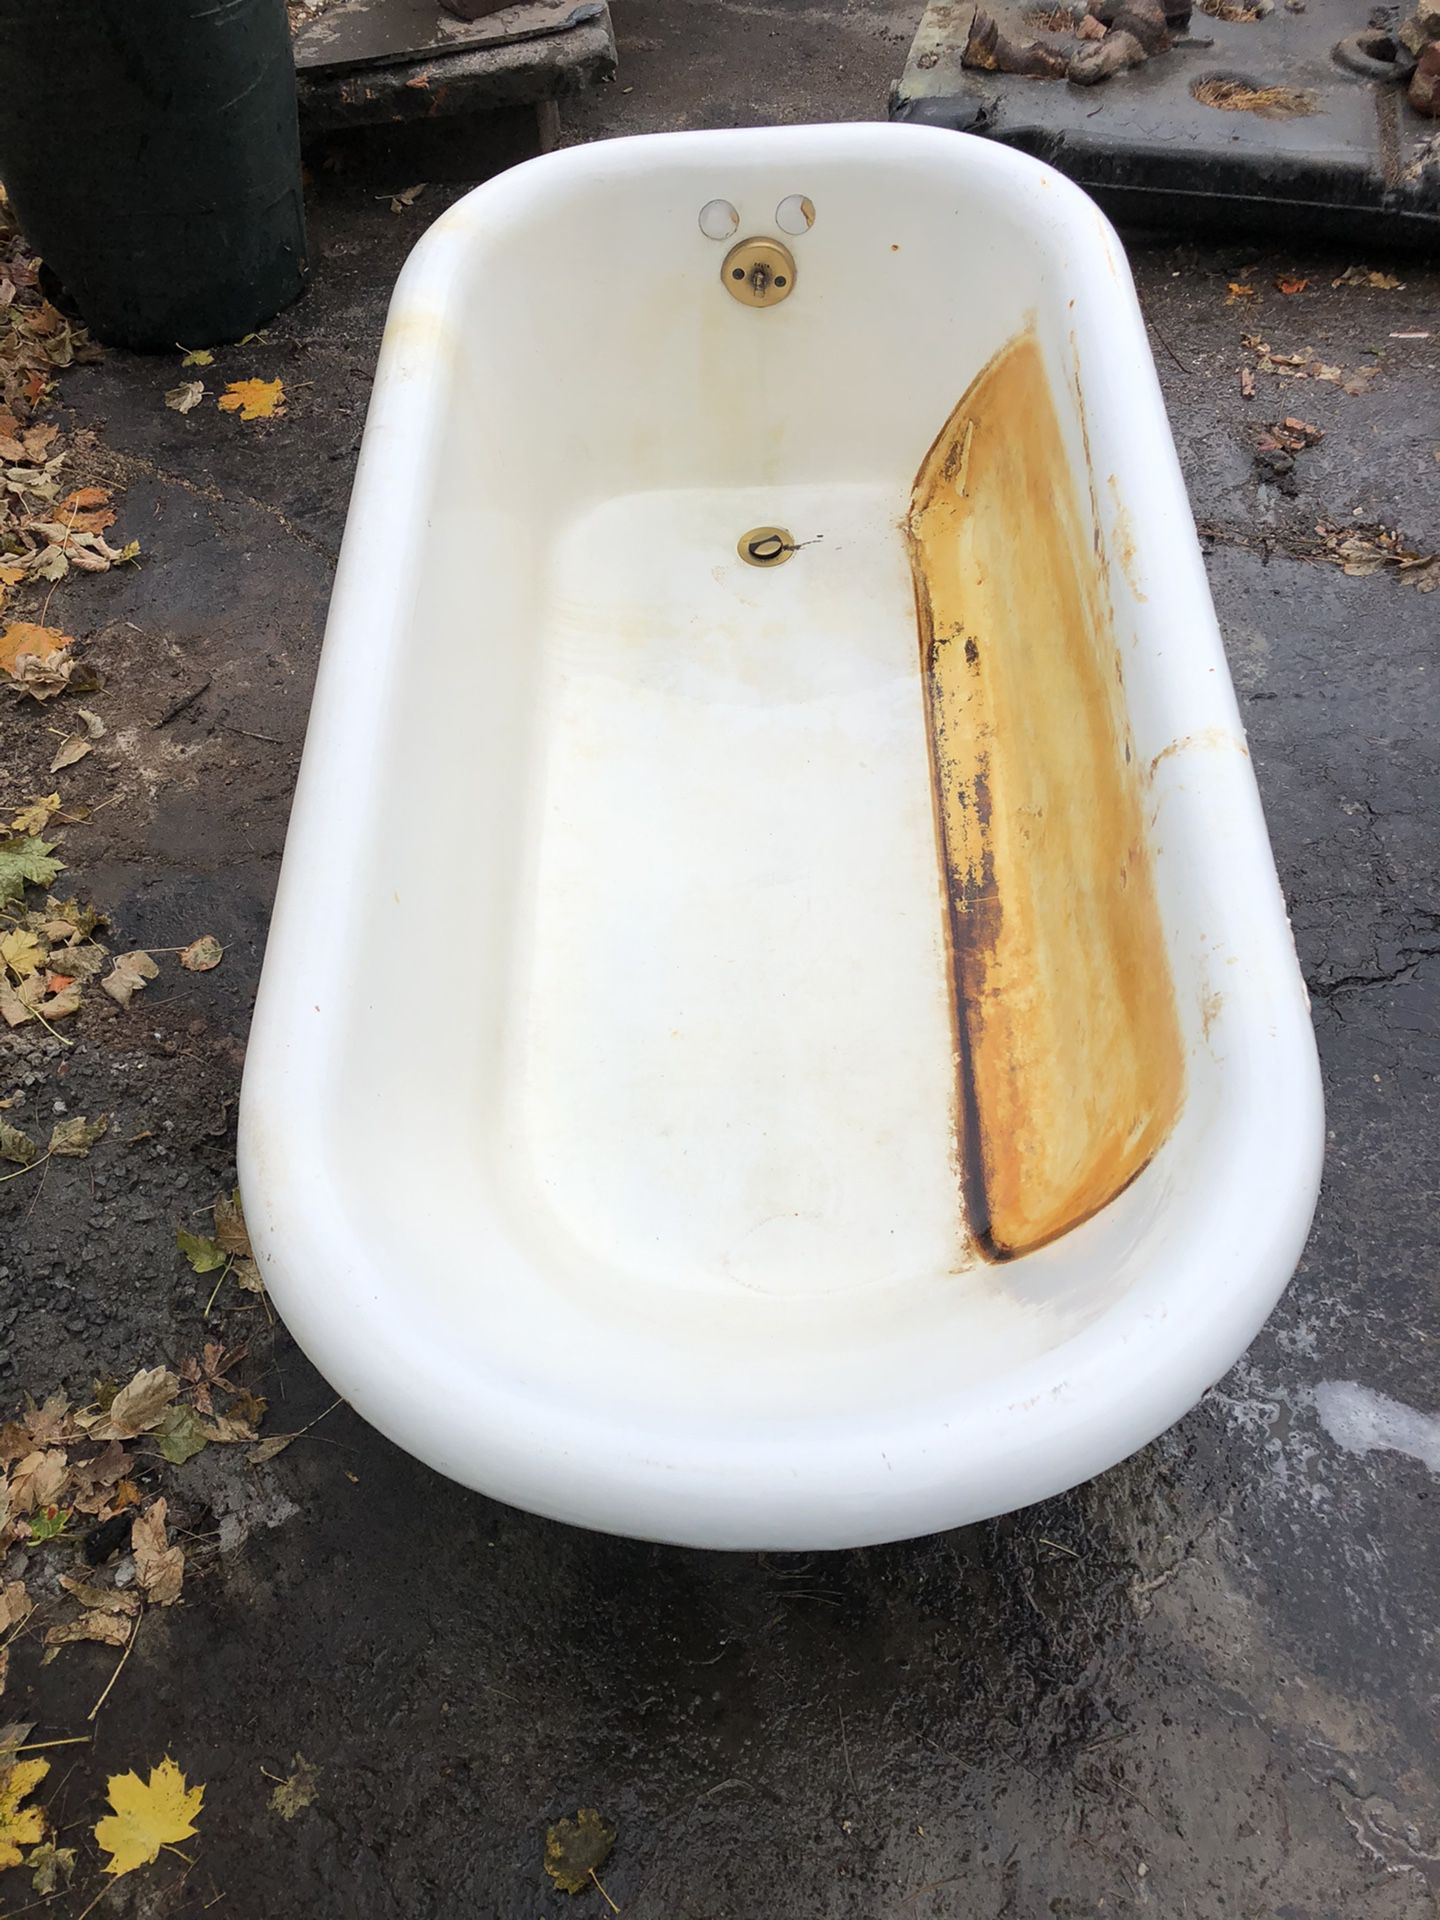 Clawfoot tub